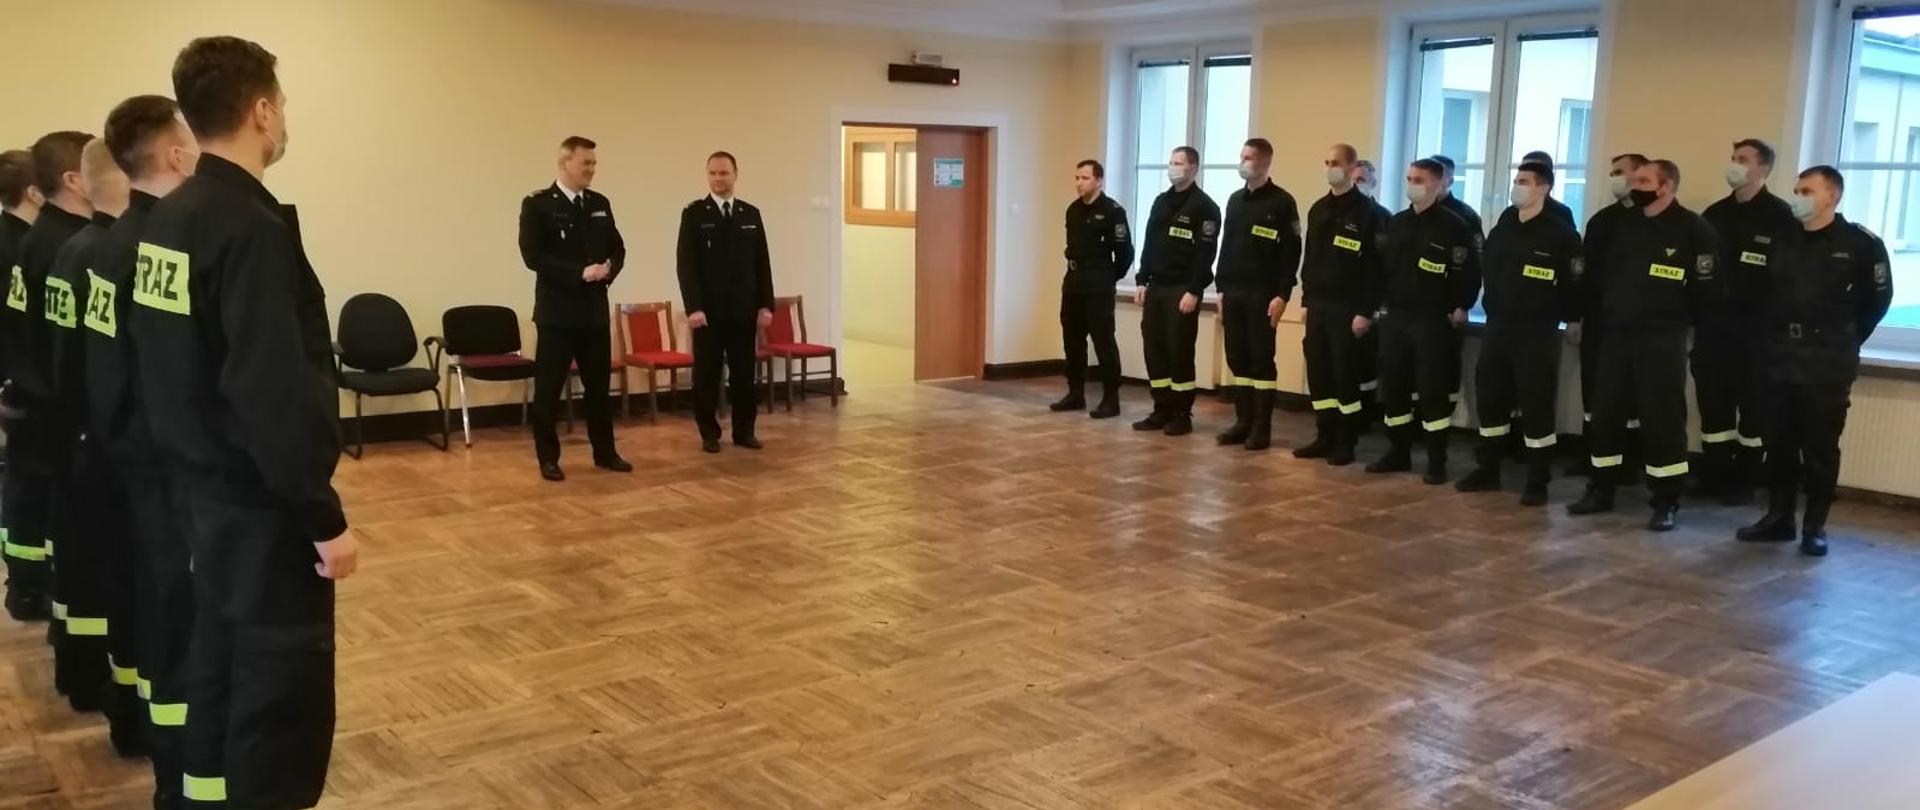 Strażacy w dwóch rzędach stoją na sali w JRG 7 przed Komendantem Miejskim PSP m.st. Warszawy i Dowódcą Jednostki